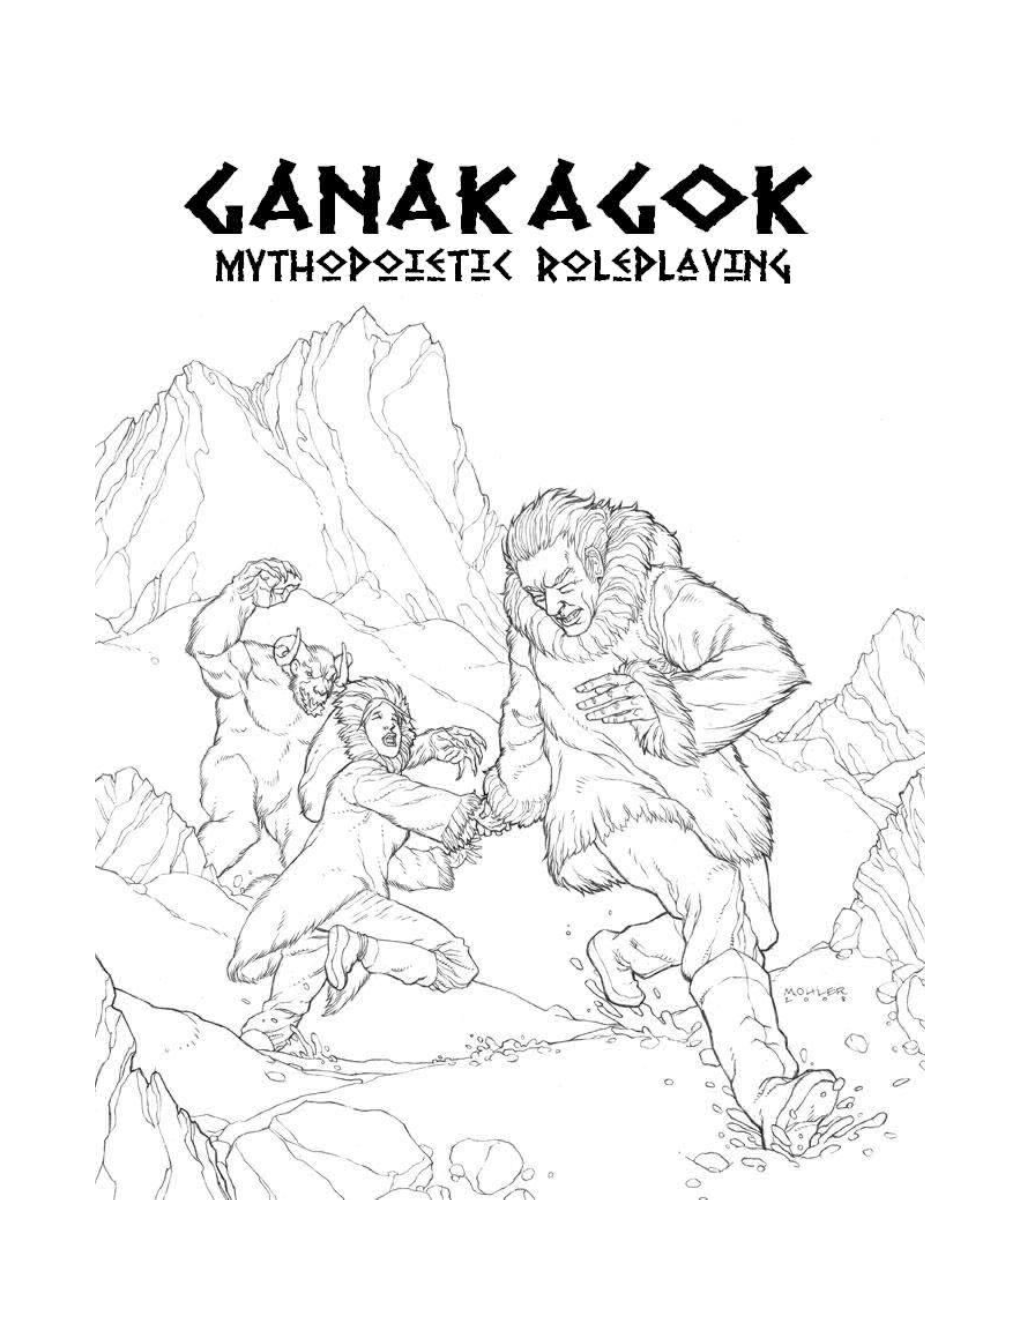 Ganakagok Tarot Art Design and Game Layout by Dave Petroski